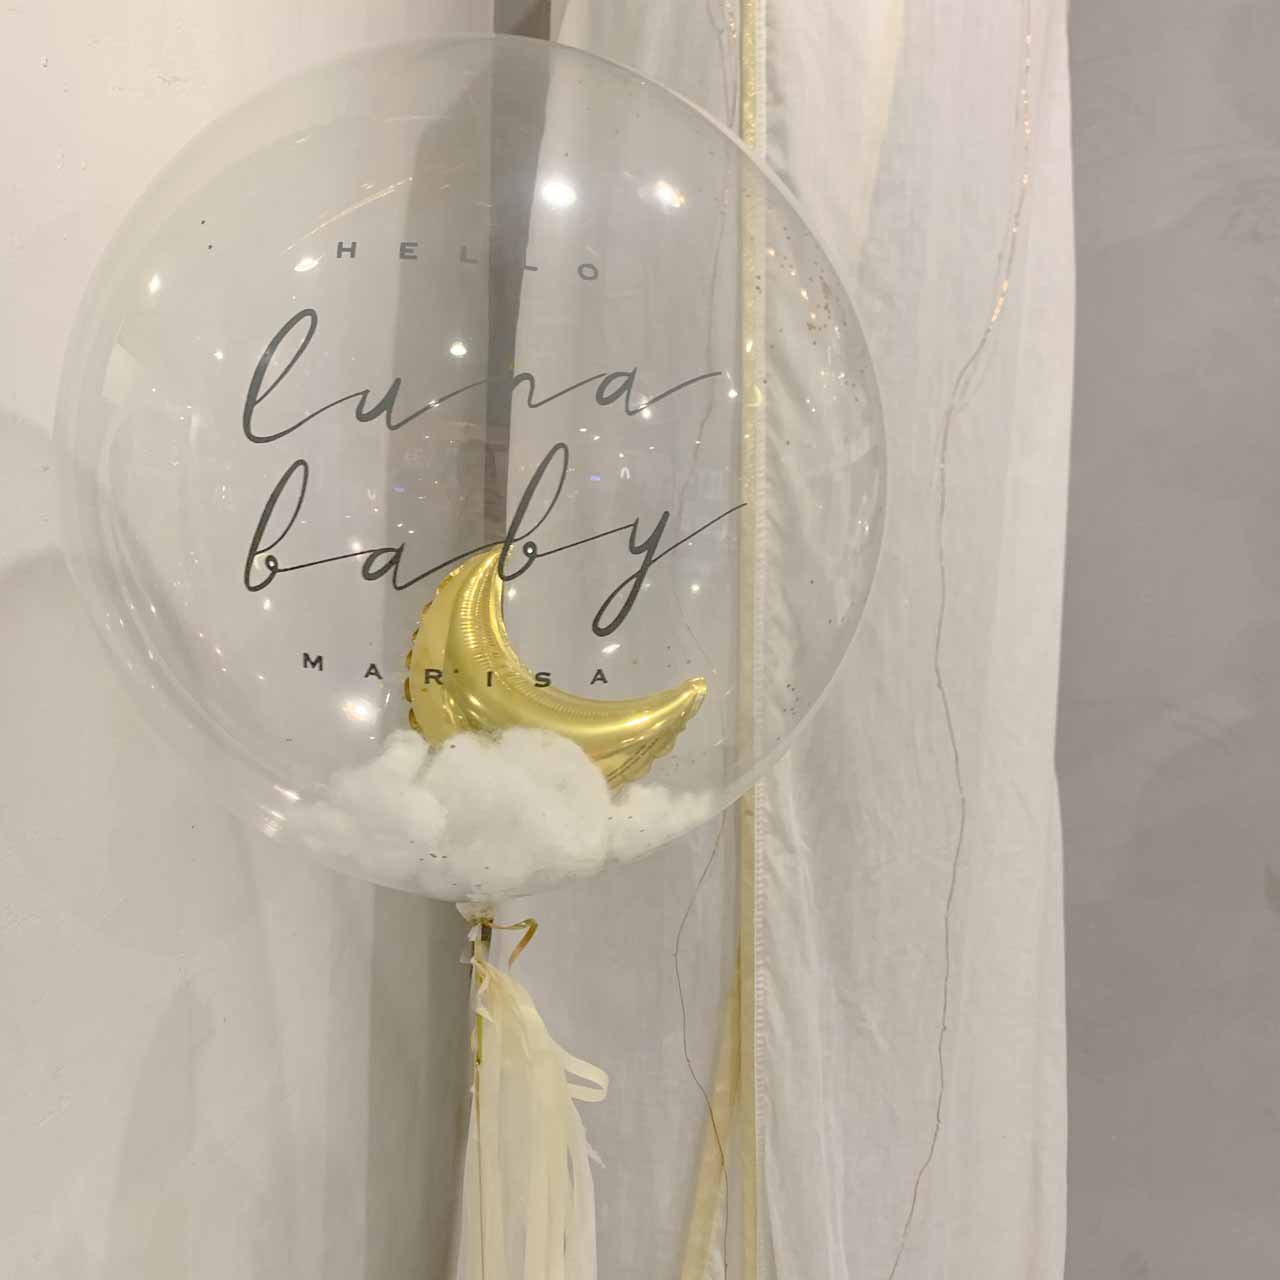 Crescent Moon Float Balloon - Float type - クレセントムーンヘリウムバルーンギフト - チャビーバルーン  大阪 名古屋 滋賀にあるおしゃれなバルーン電報 バルーン装飾 バルーンギフトのことならチャビーバルーン